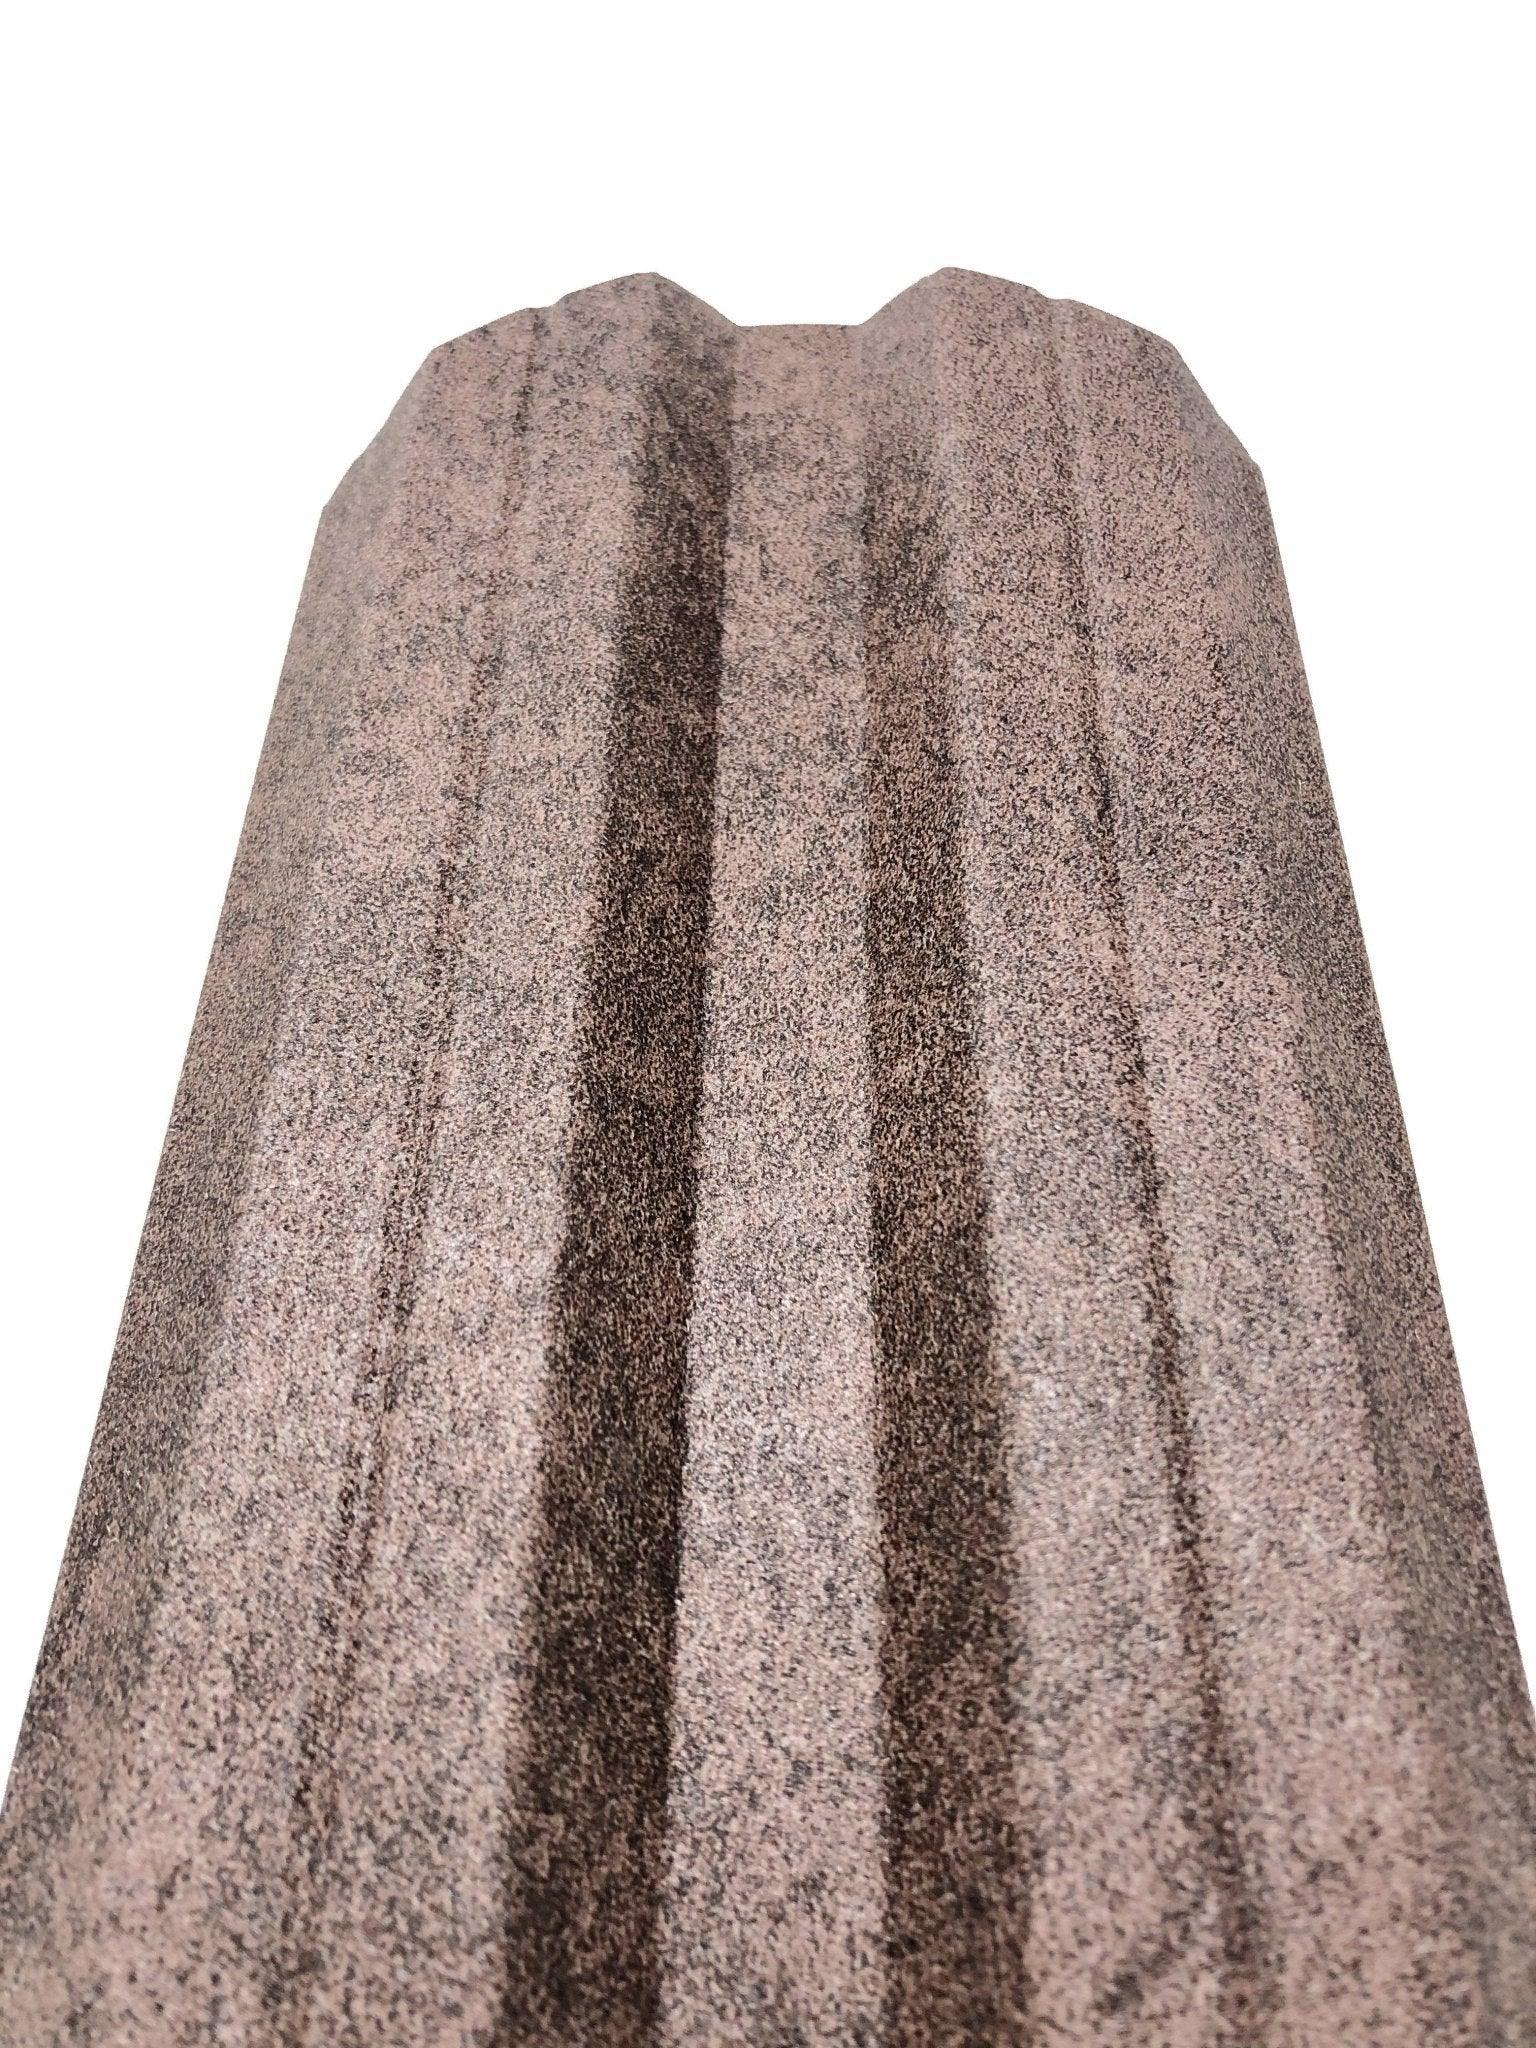 Granit Imperial - Kabine.ro - Imitatie Piatra | 0.40mm